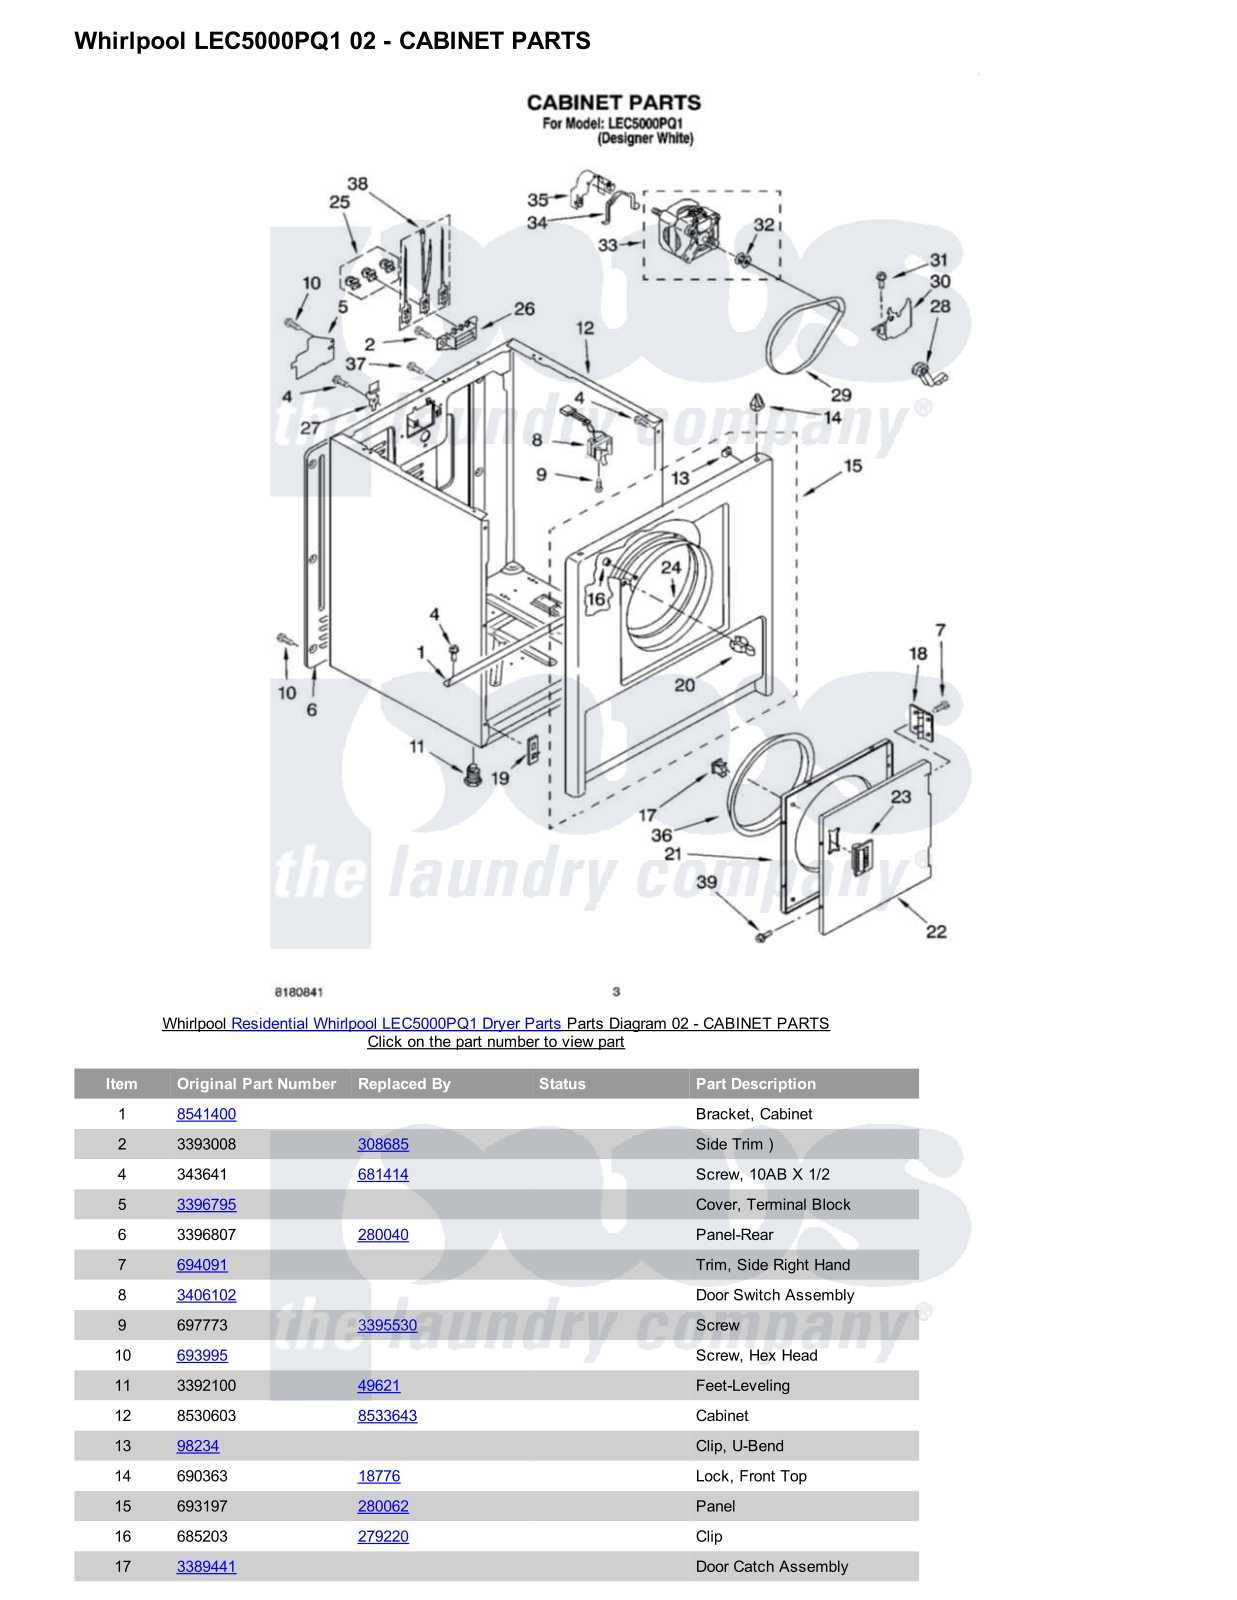 Whirlpool LEC5000PQ1 Parts Diagram